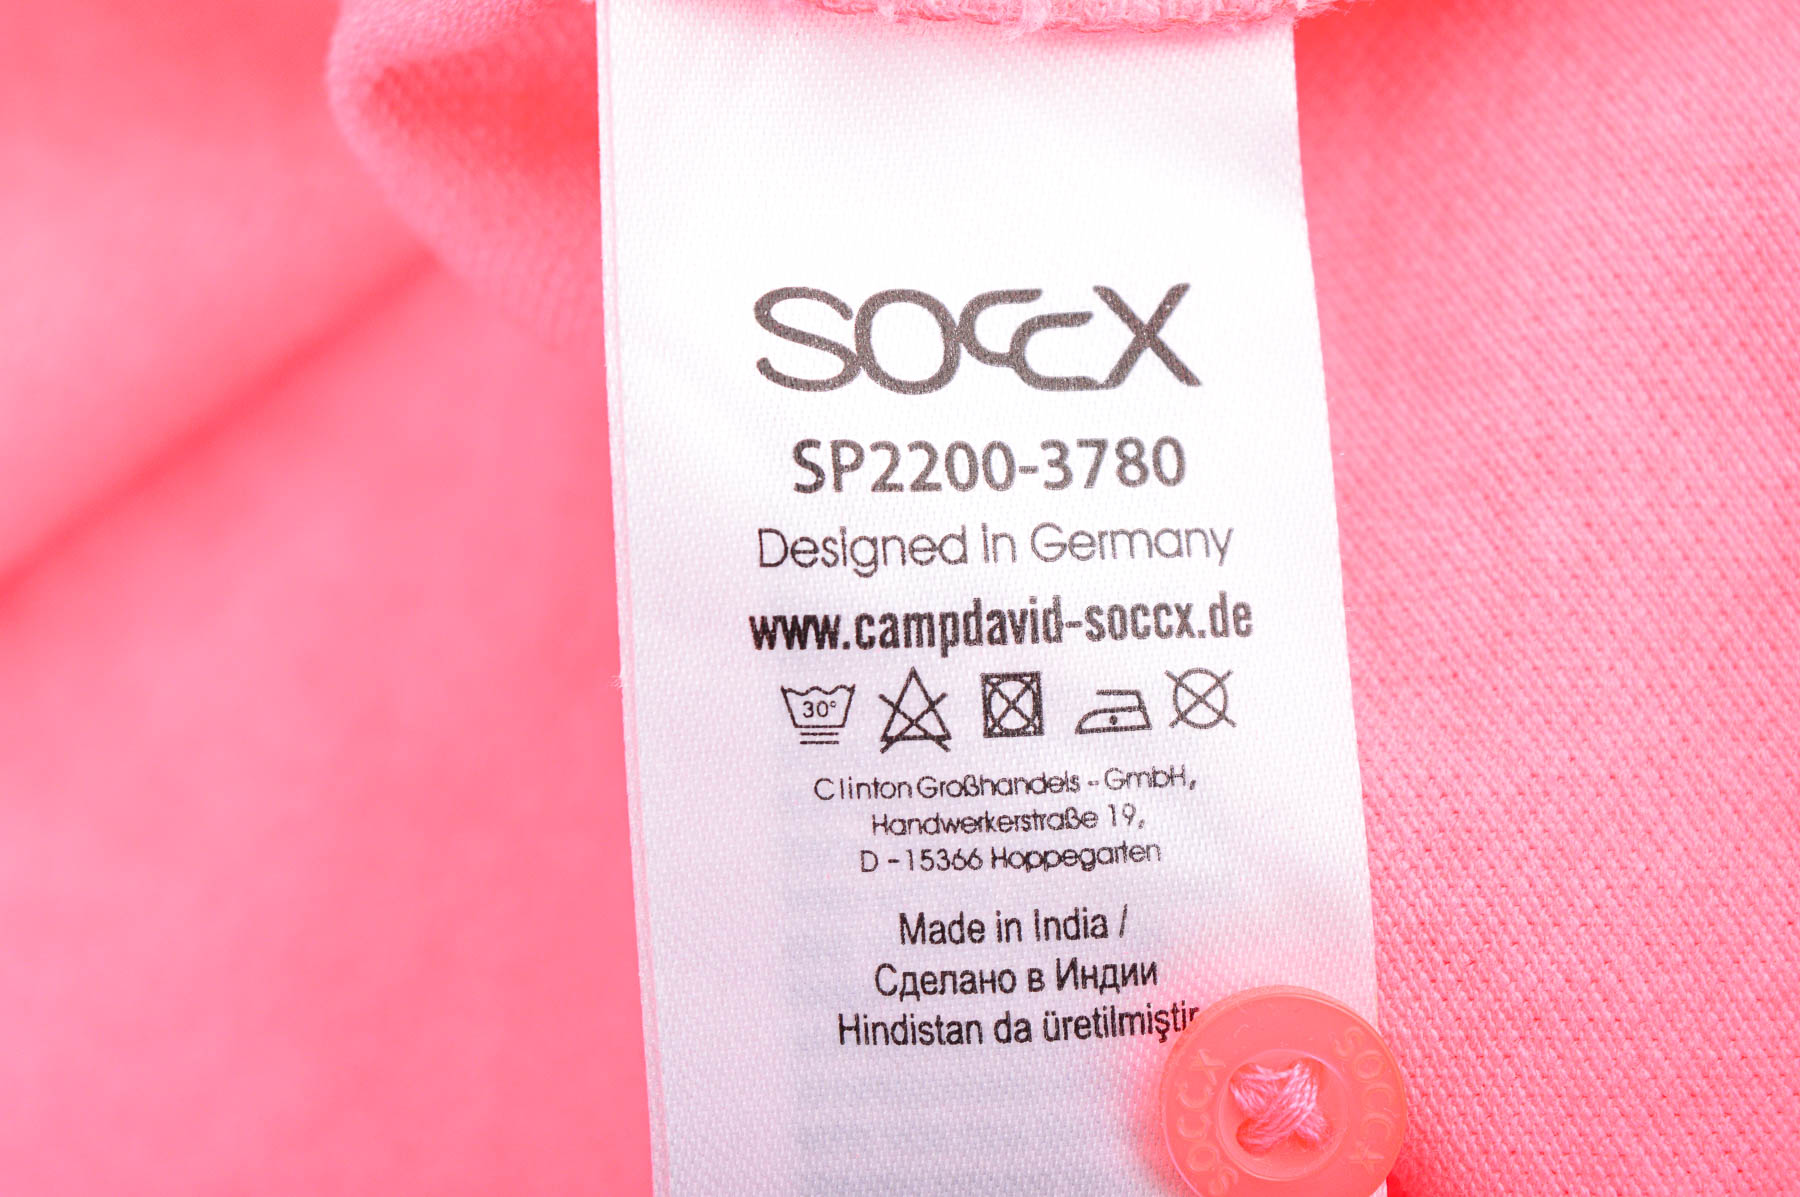 Дамска тениска - Soccx - 2